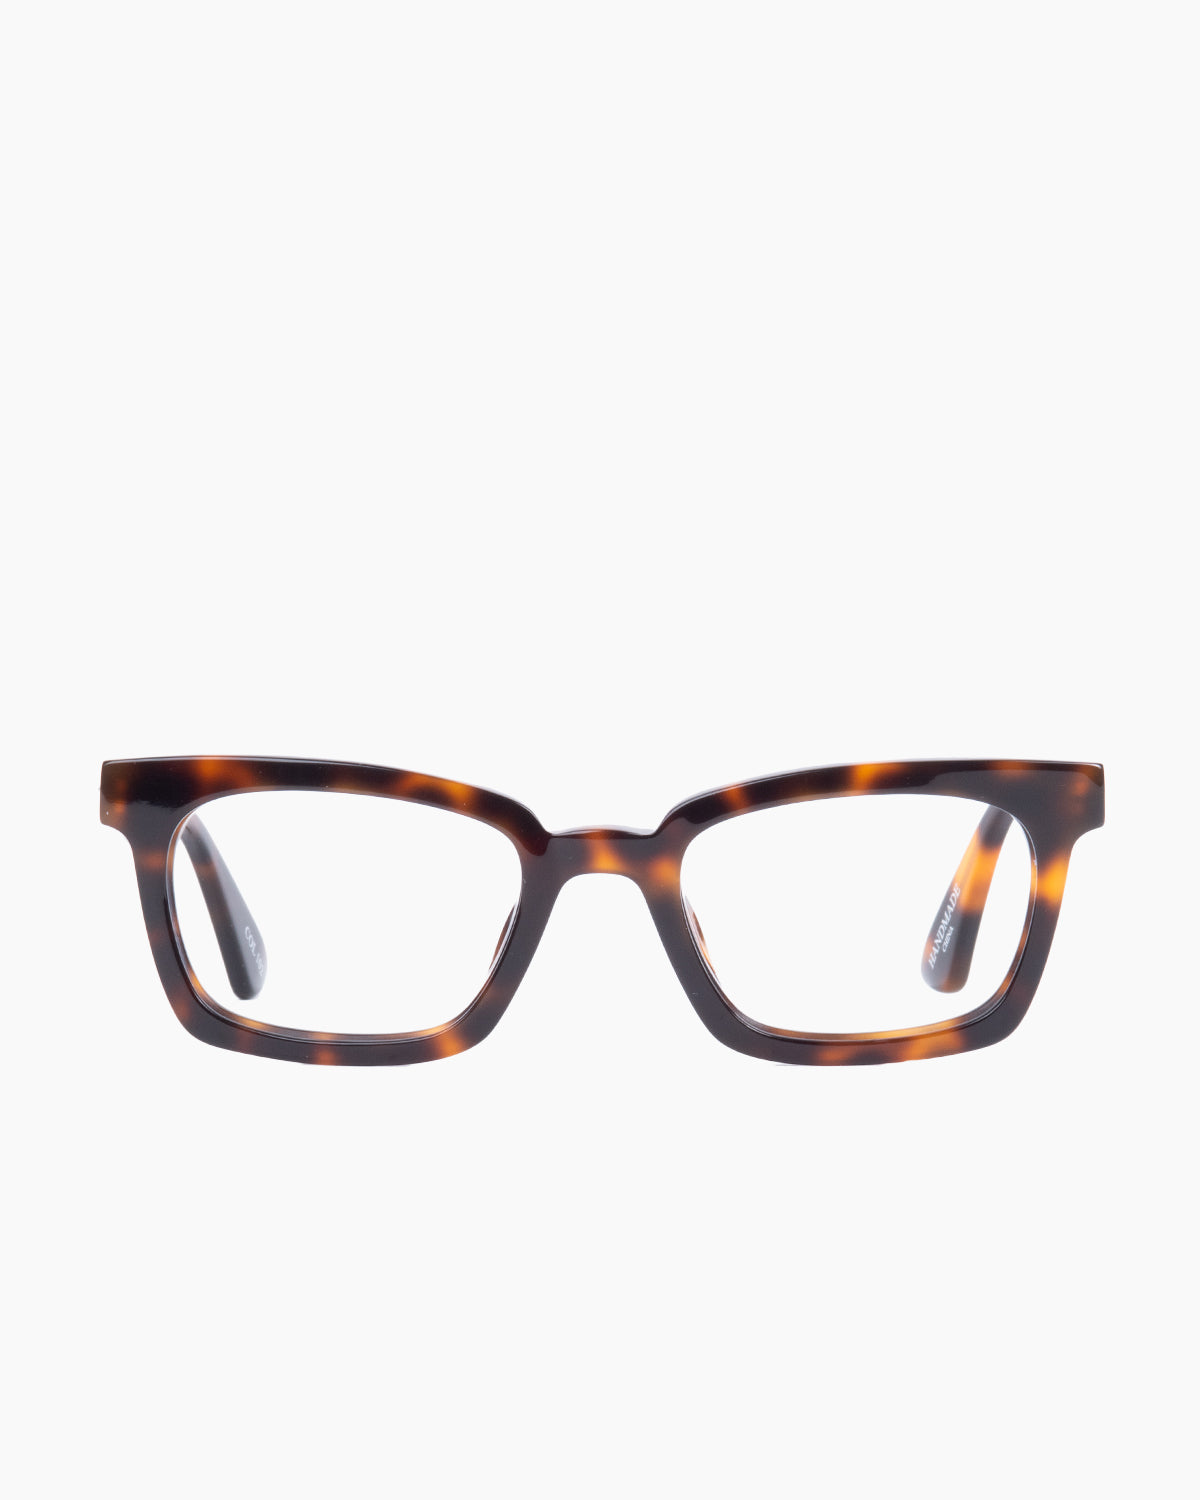 Evolve - Como - 102 | glasses bar:  Marie-Sophie Dion